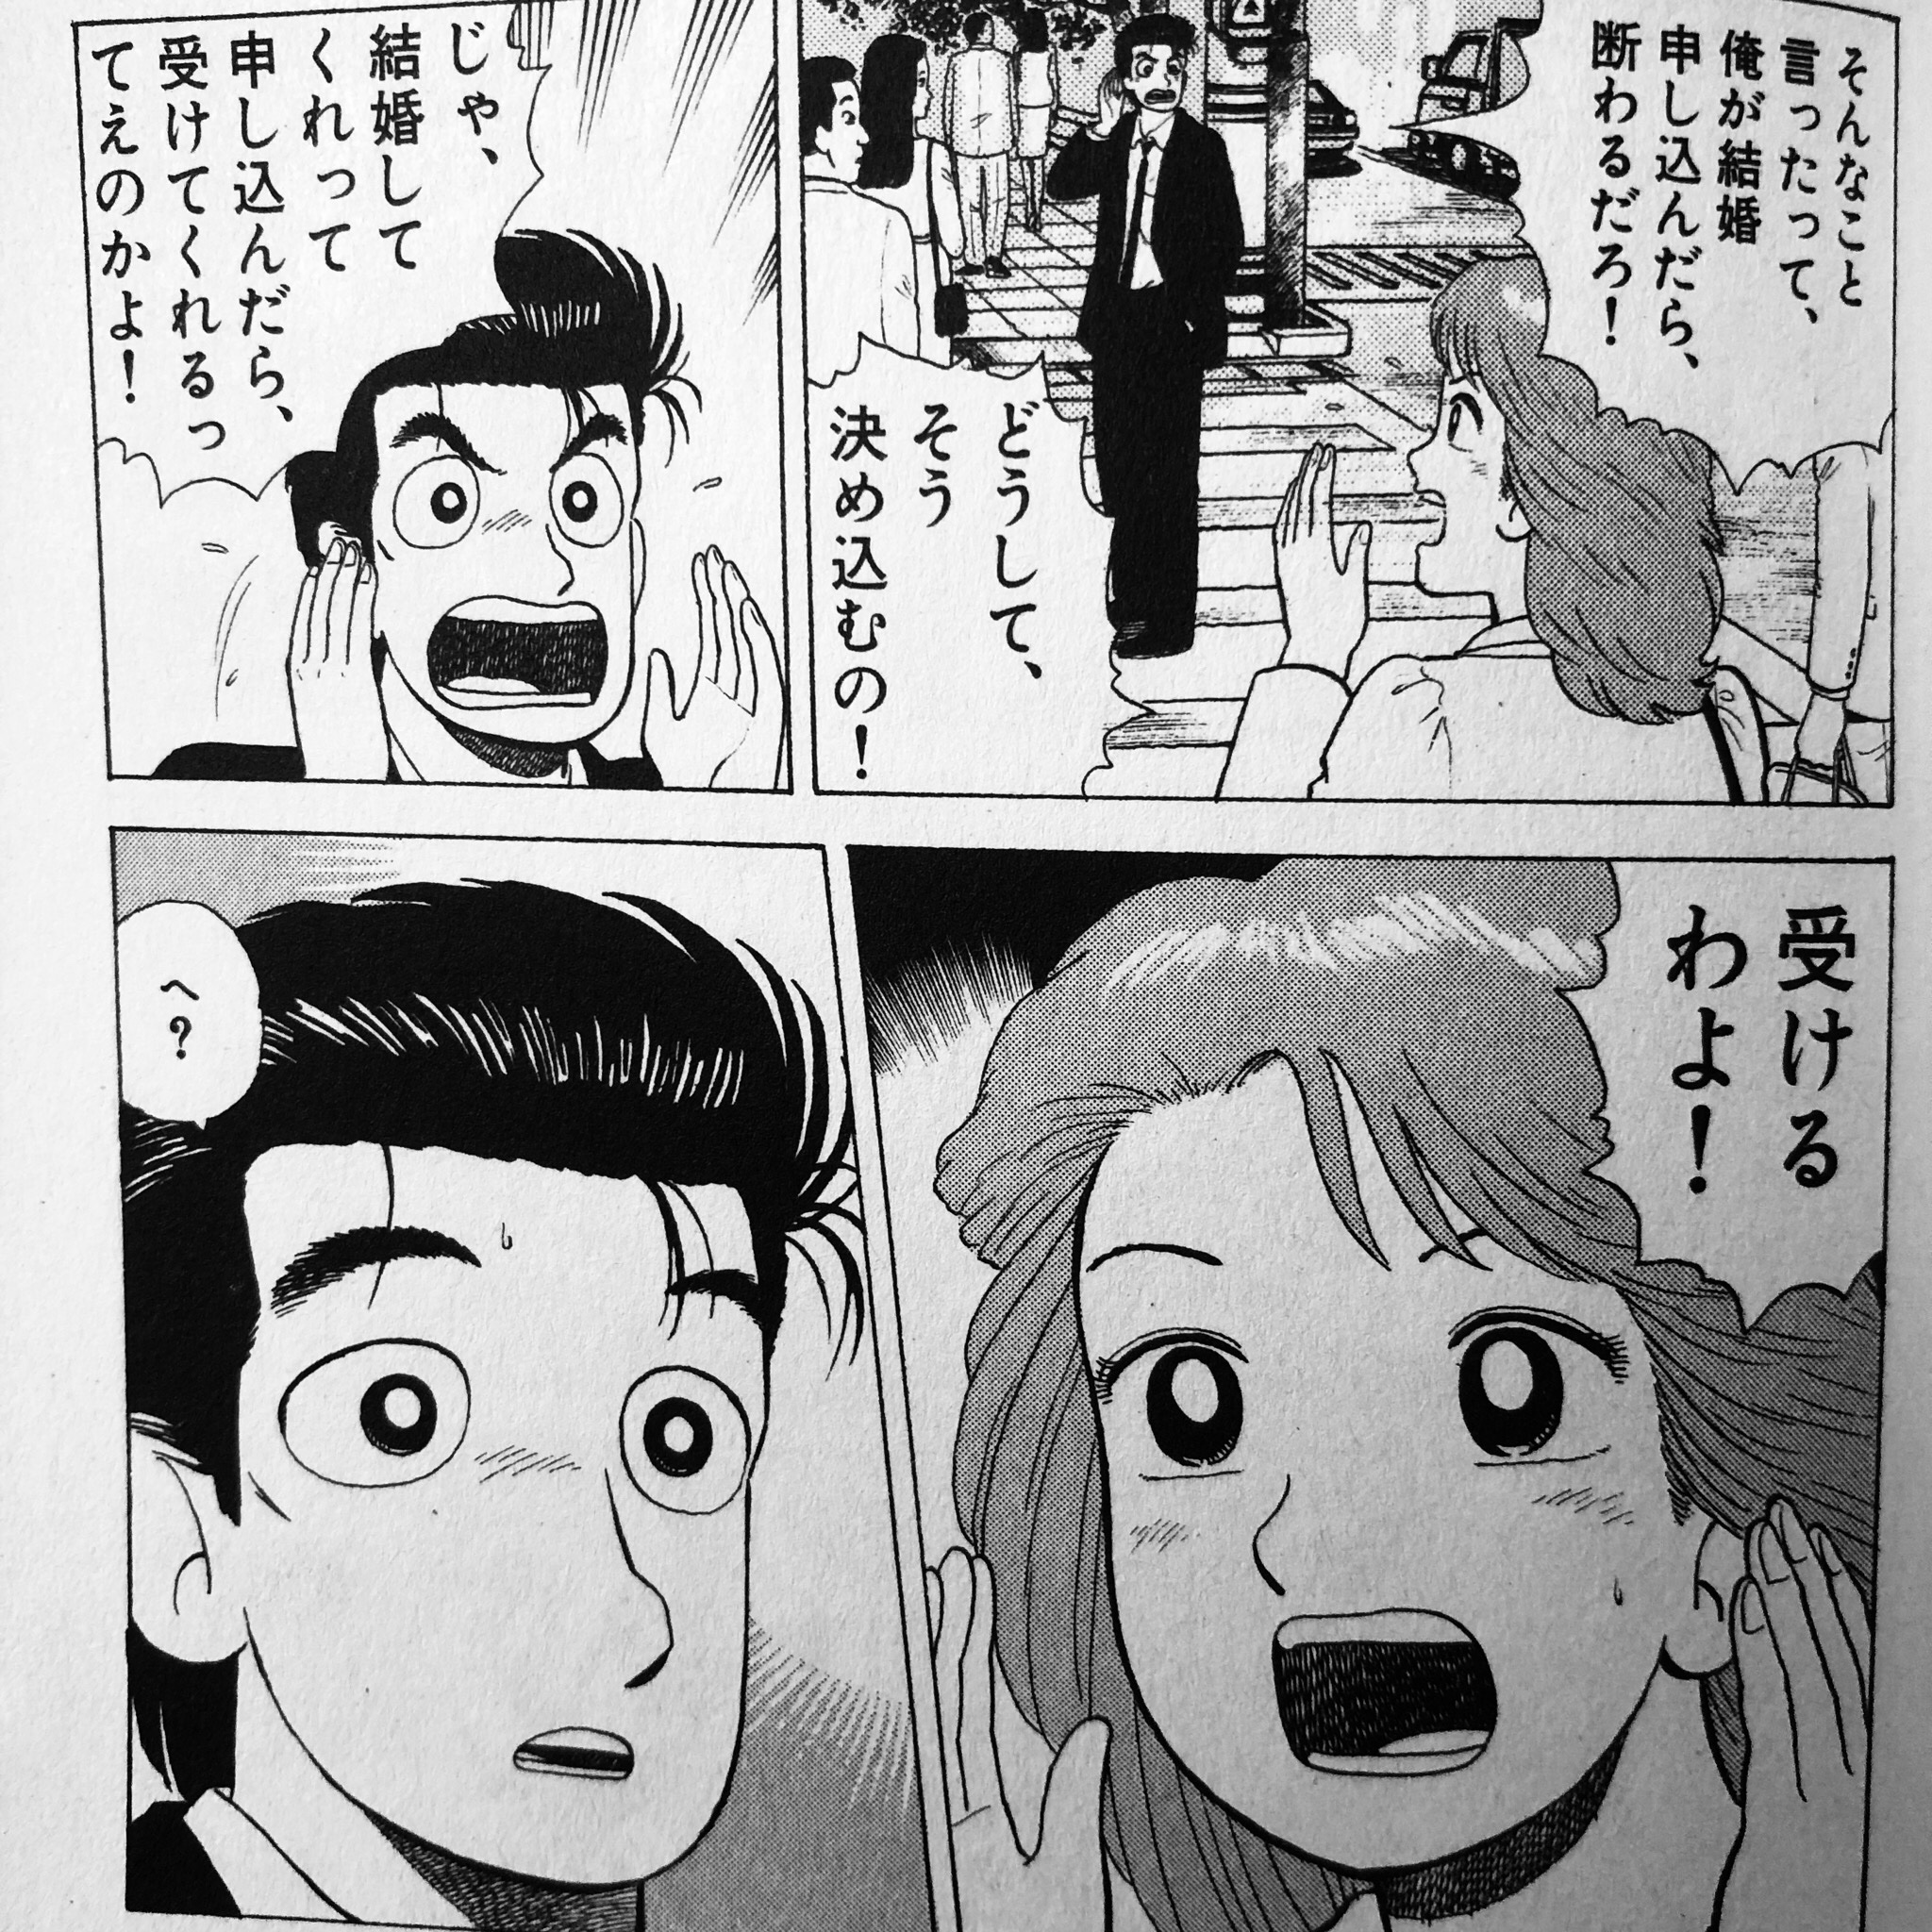 Shimako 3月のライオン の15巻で告白を超越してプロポーズという話が出てきて 思わず 美味しんぼ みを感じてしまった 山岡さんも栗田さんもお互いに 好き って言わないで結婚しちゃってるけど 個人的には ずっと好きだった って明確に